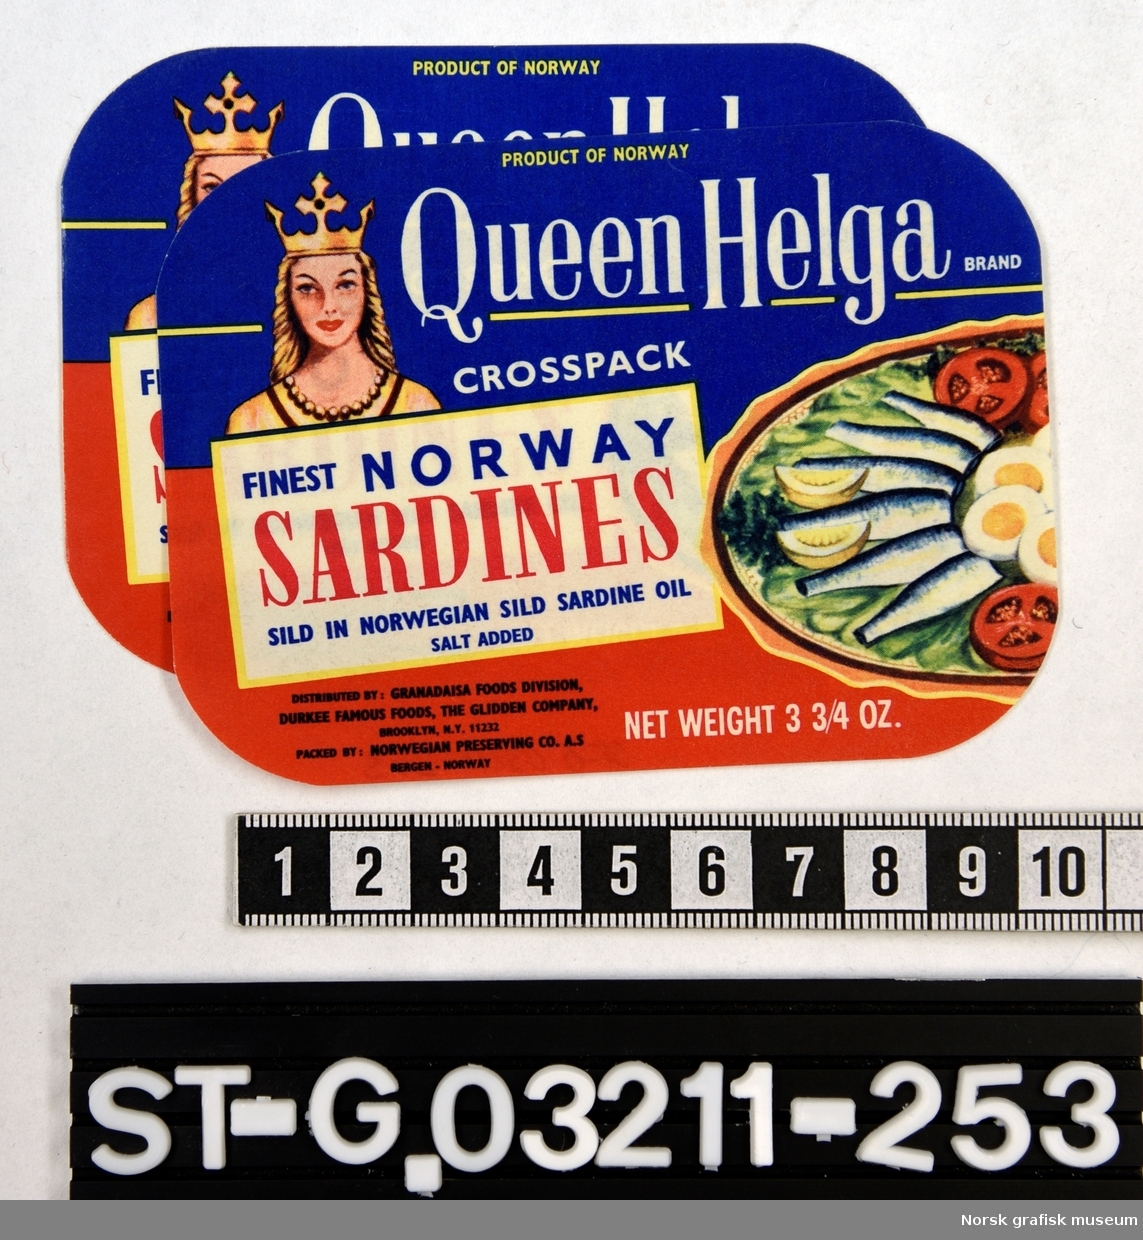 Etiketter i rødt og blått, med en fremstilling av en kvinne med krone på venstre side av etiketten, og et fat med fisk, egg og grønnsaker på høyre side. 

"Finest Norway sardines in Norwegian sild sardine oil"